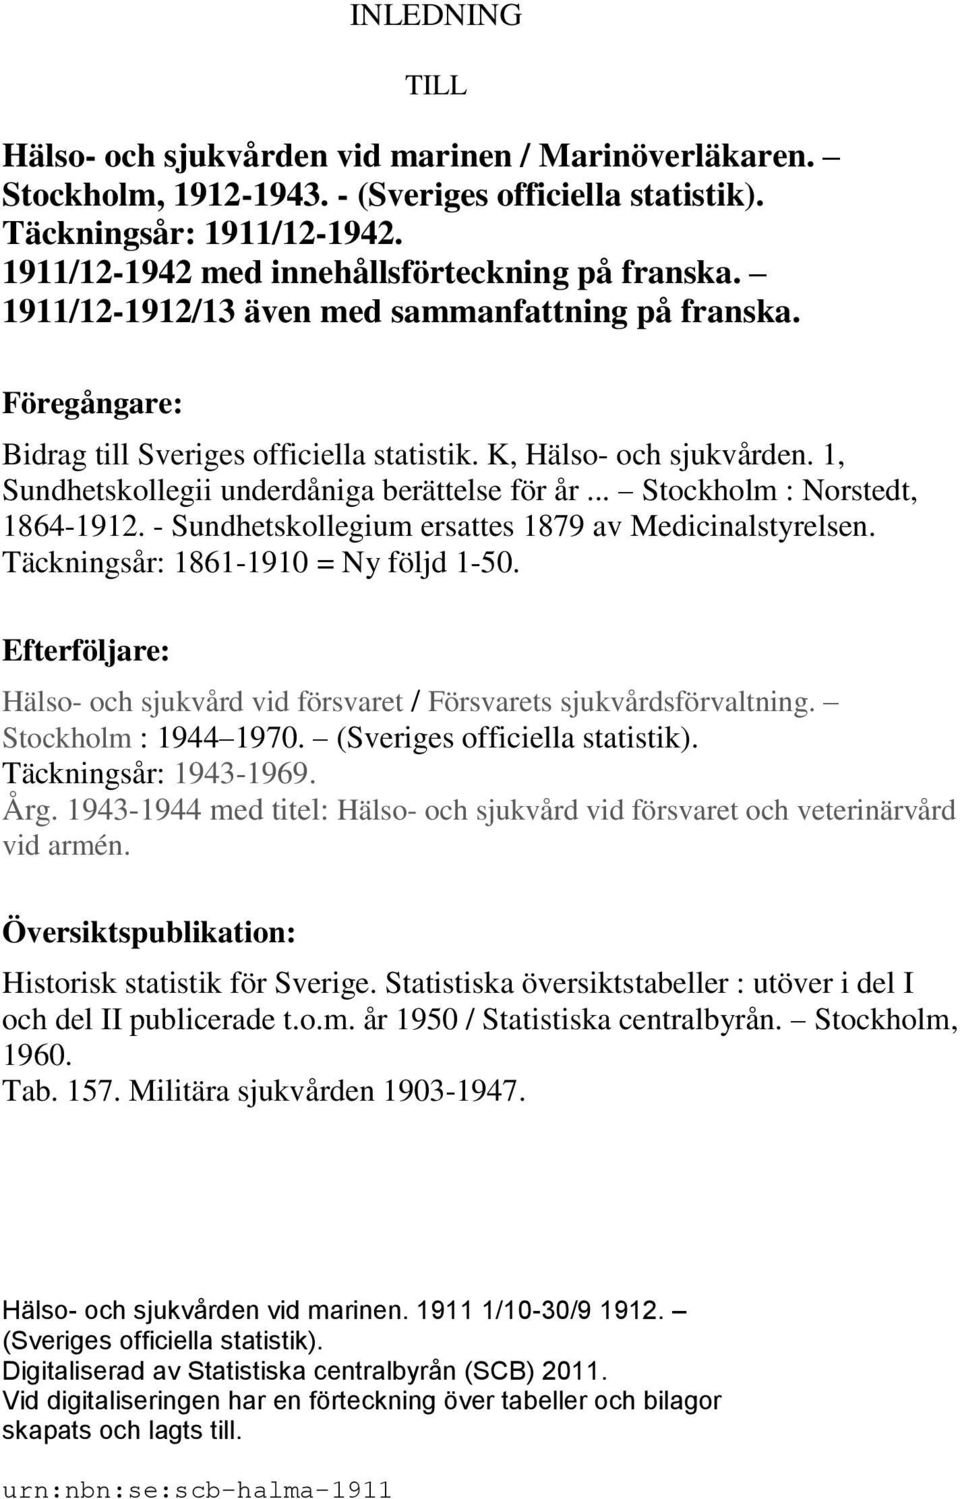 1, Sundhetskollegii underdåniga berättelse för år... Stockholm : Norstedt, 1864-1912. - Sundhetskollegium ersattes 1879 av Medicinalstyrelsen. Täckningsår: 1861-1910 = Ny följd 1-50.